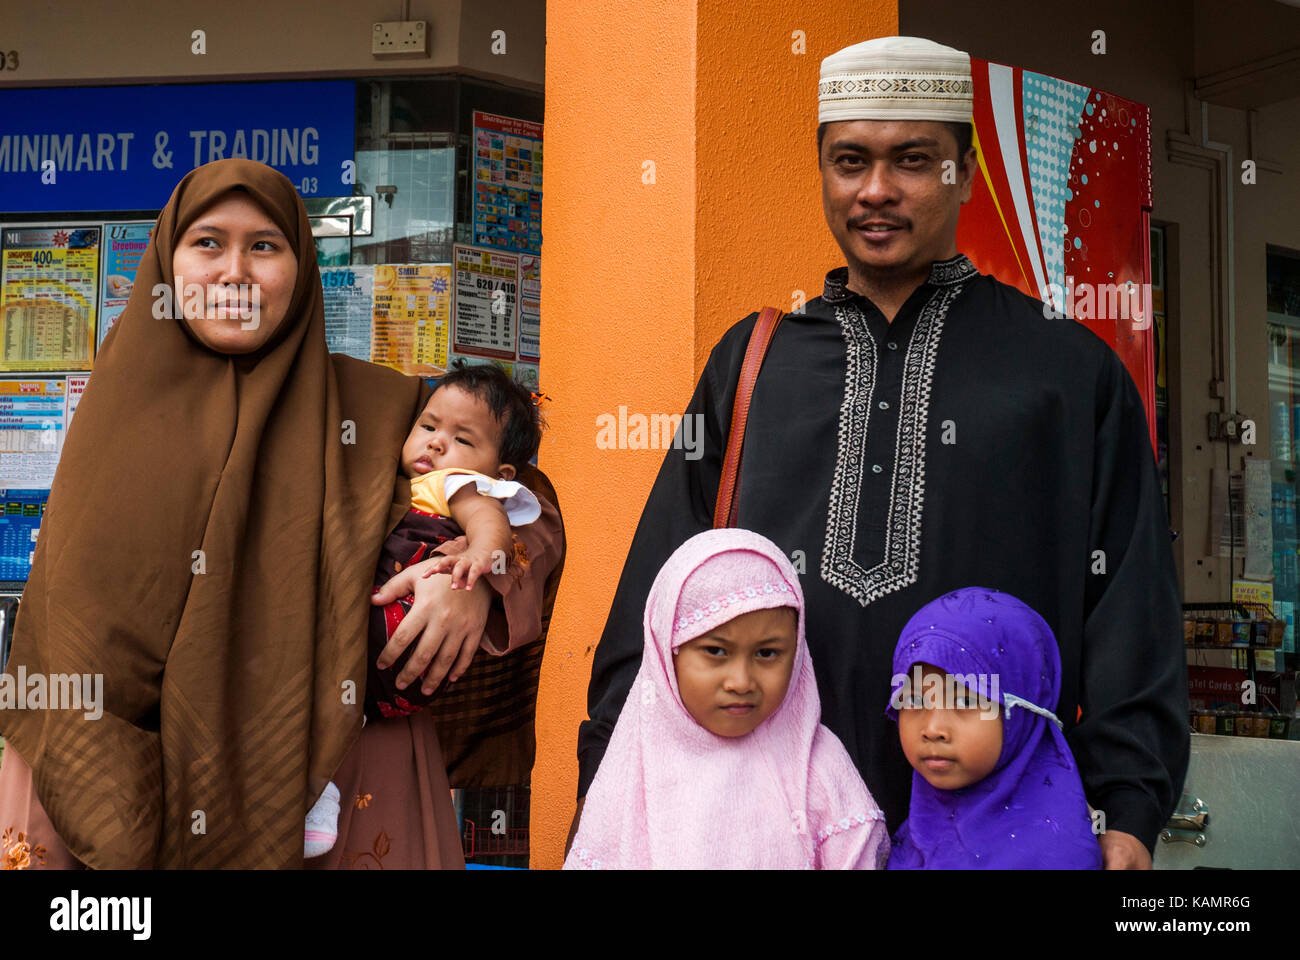 Malay famille hors du marché, Singapour Geylang Serai Banque D'Images